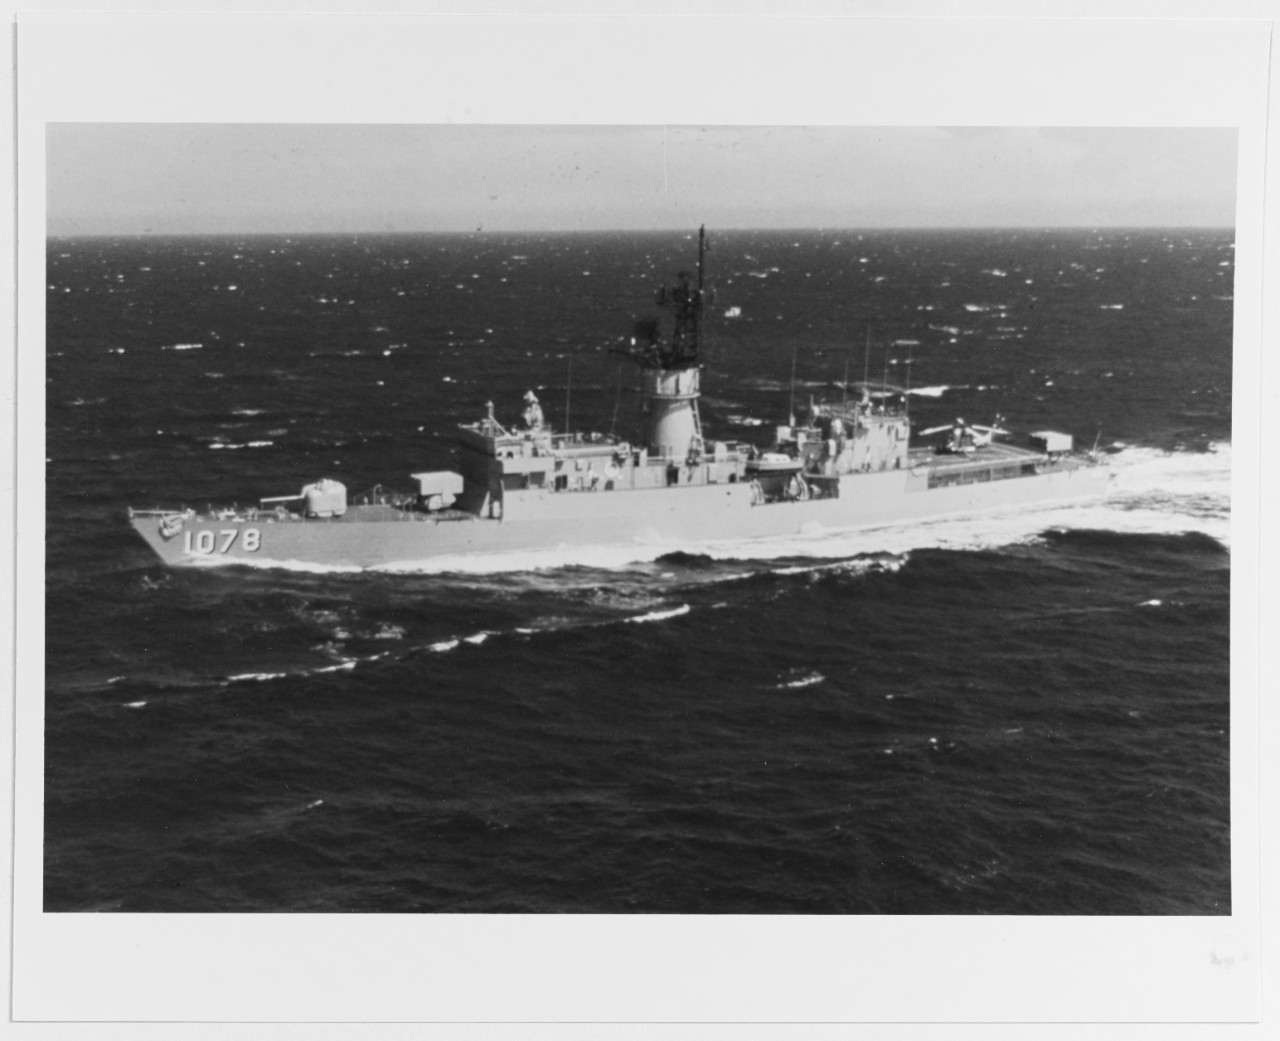 USS JOSEPH HEWES (DE-1078)